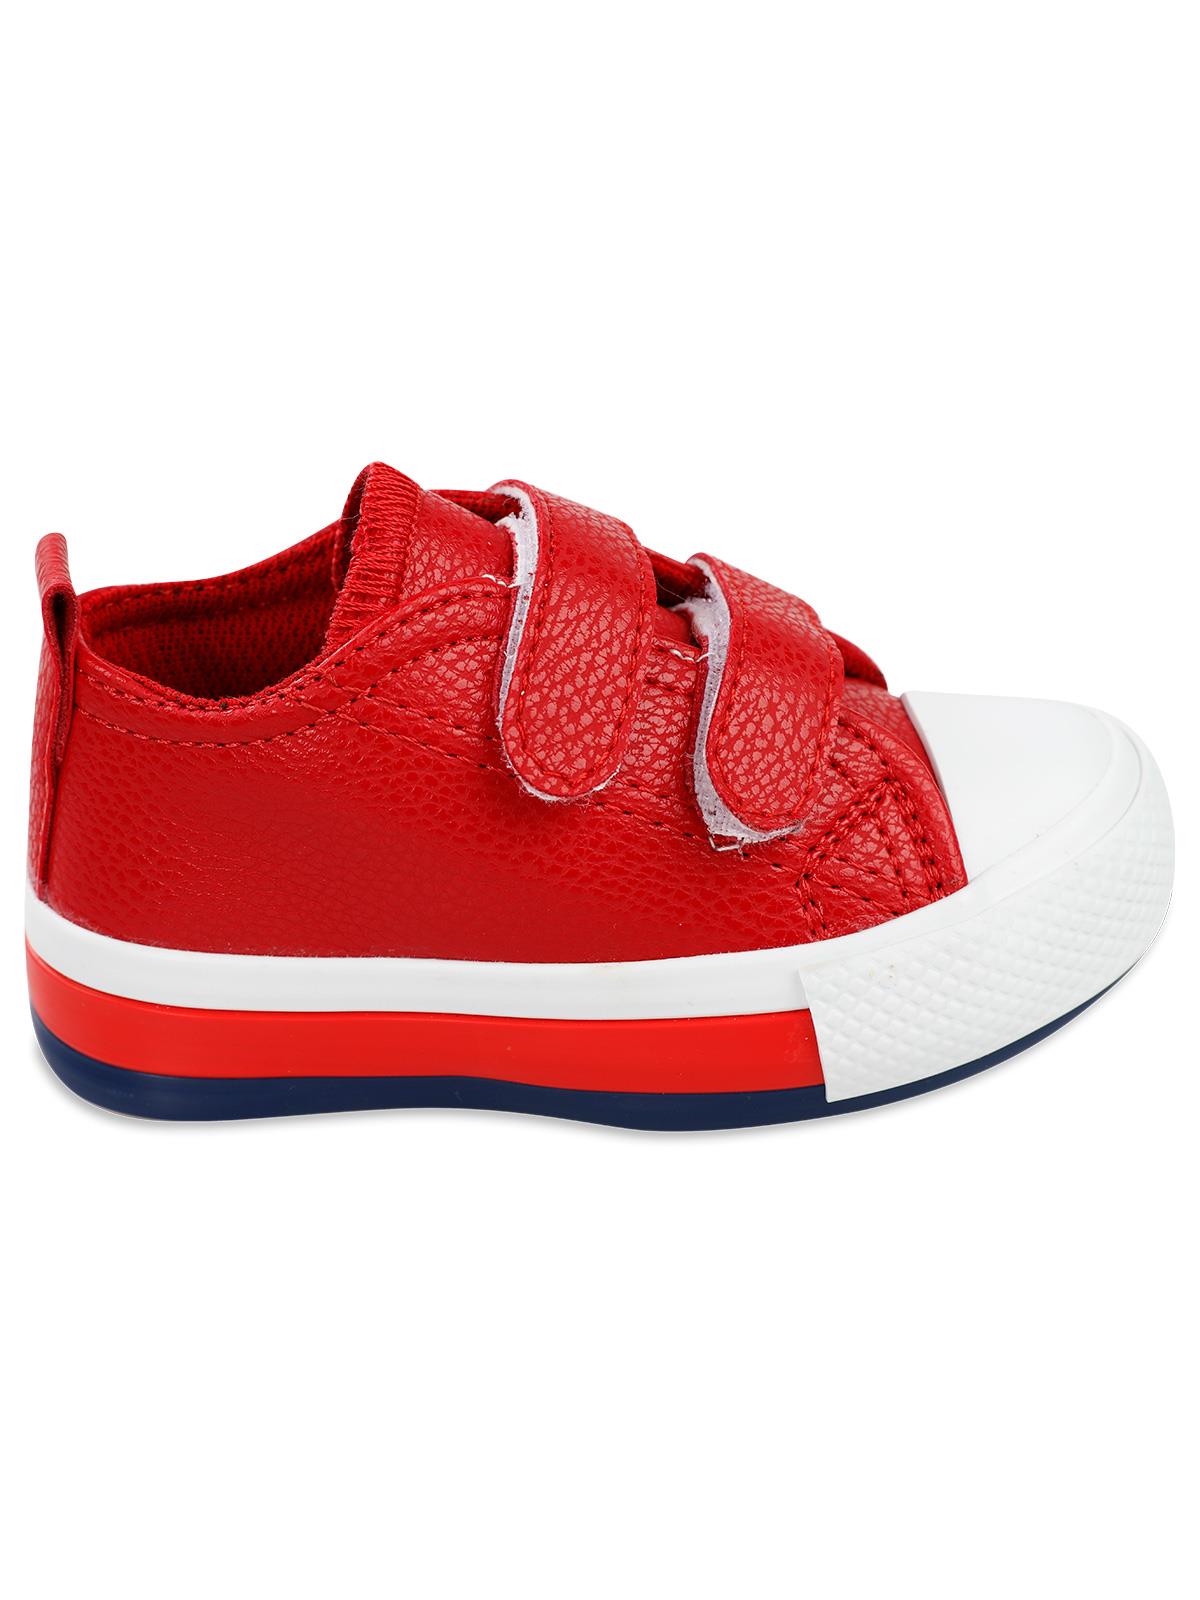 Civil Sport Erkek Çocuk Spor Ayakkabı 21-25 Numara Kırmızı